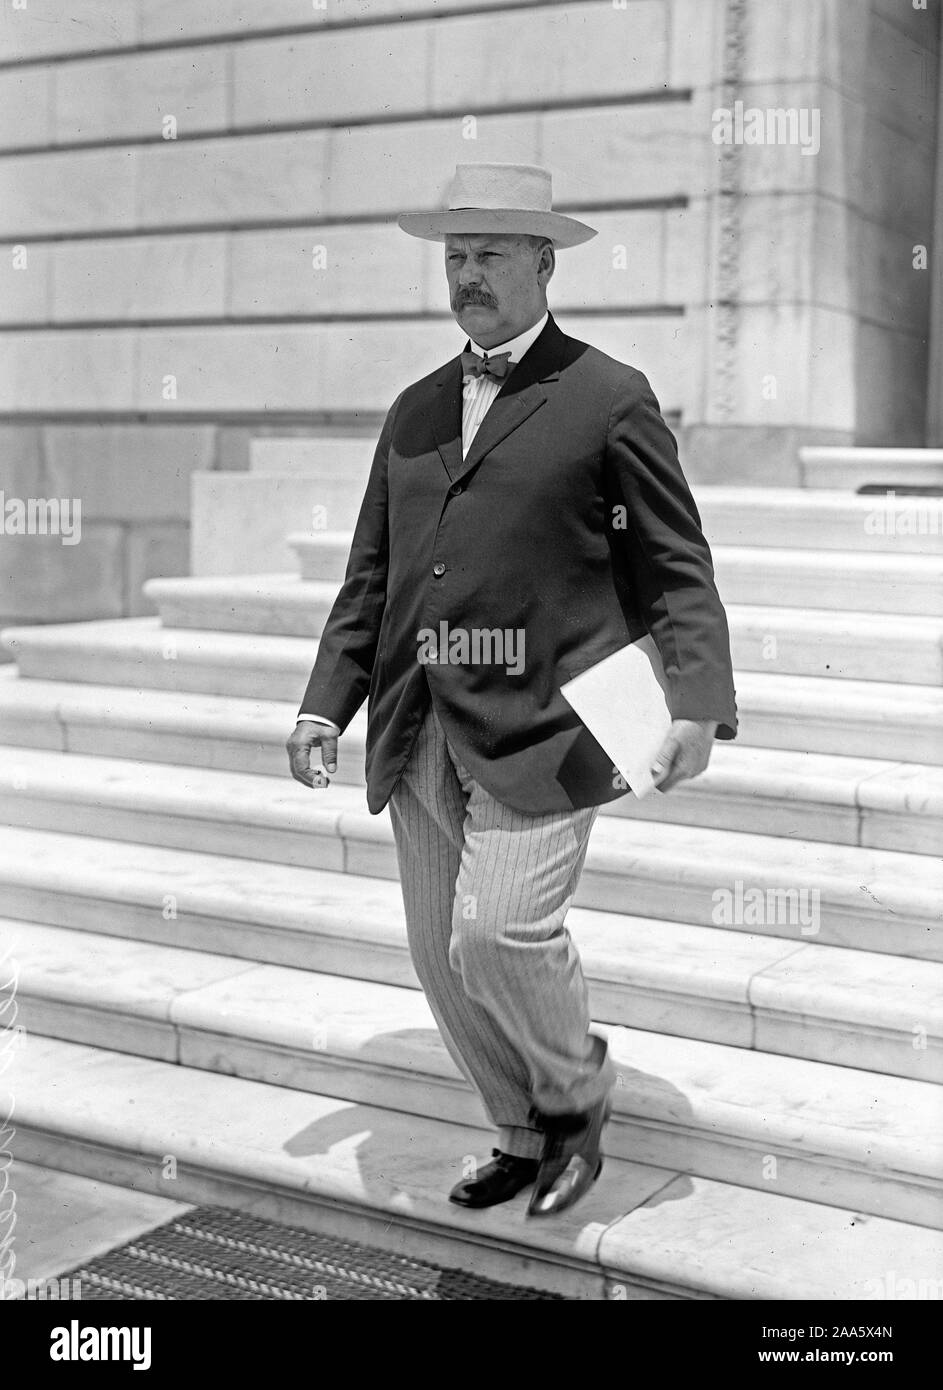 Début des années 1900, les politiciens américains - United States Senator John W. Semaines ca. 1913-1917 Banque D'Images